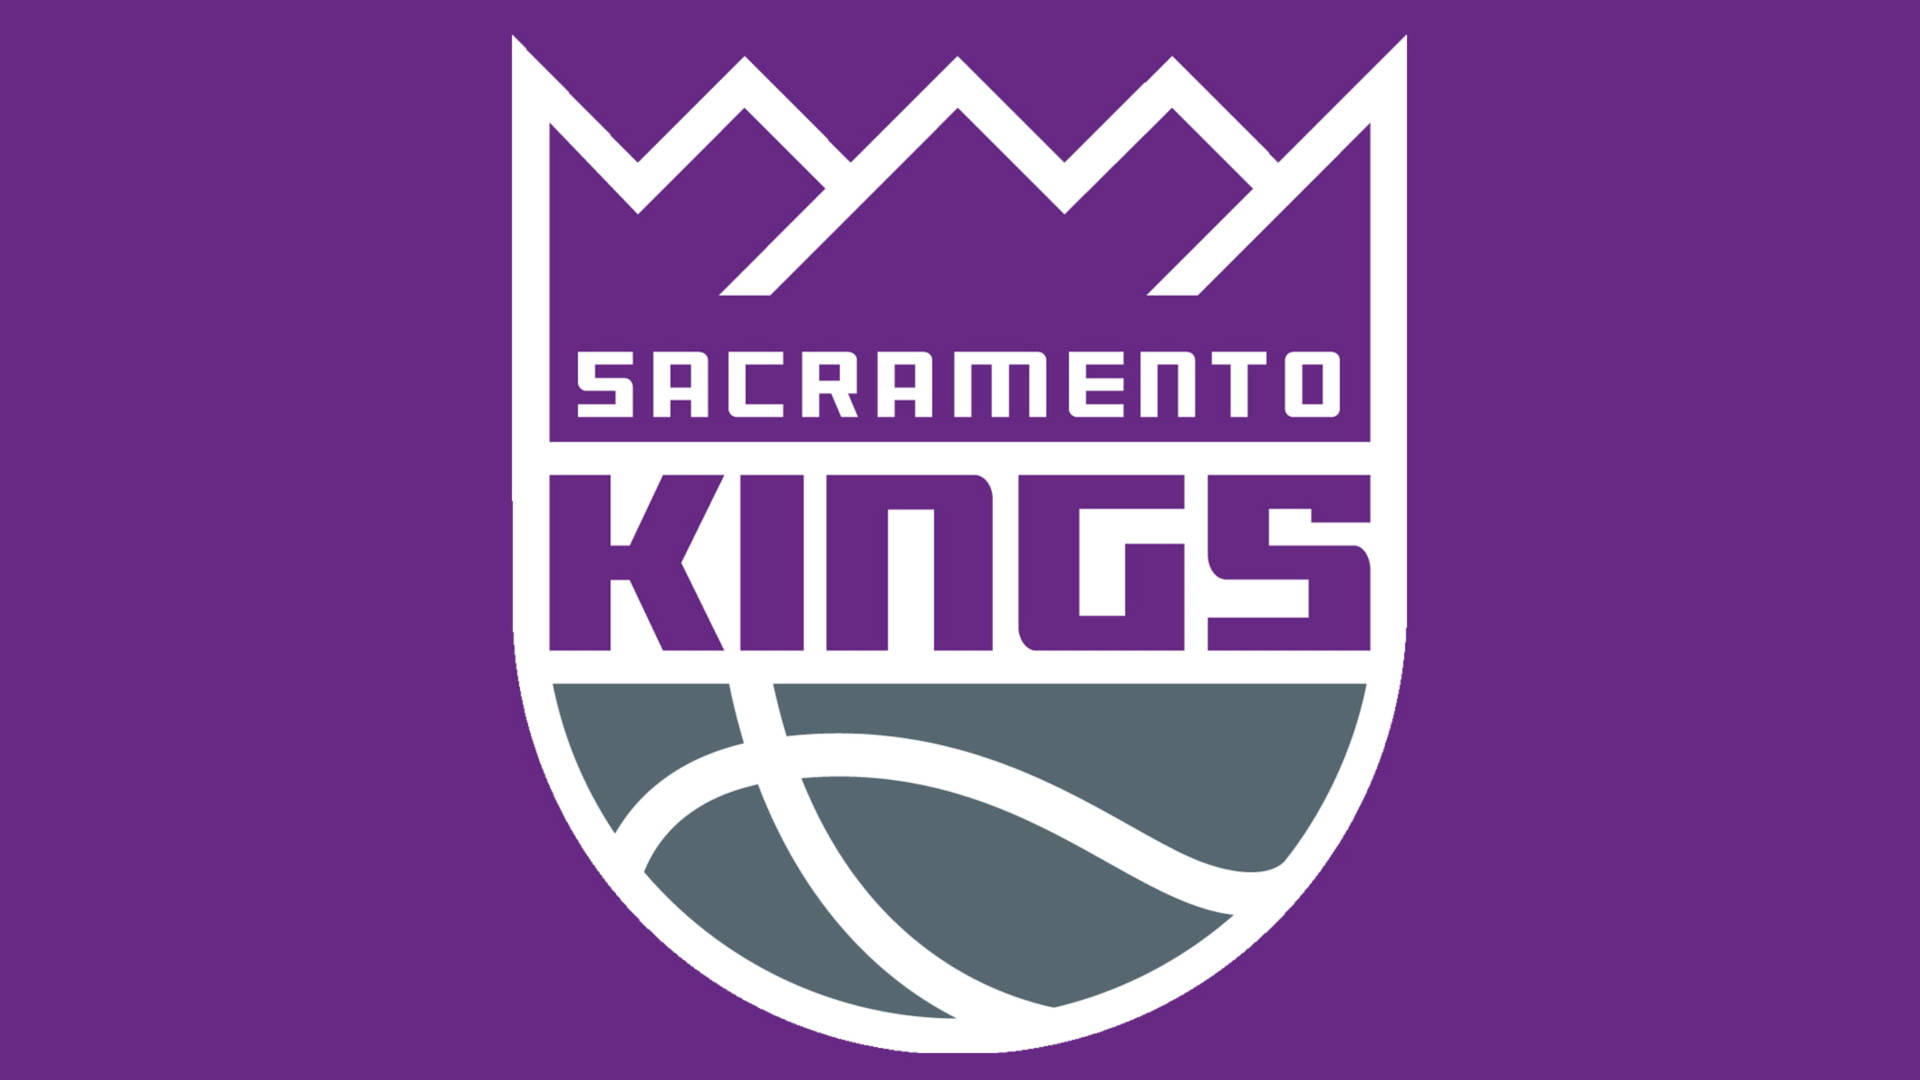 Fundode Tela Para Computador Ou Celular: Logotipo Simplista Do Sacramento Kings Em Violeta. Papel de Parede